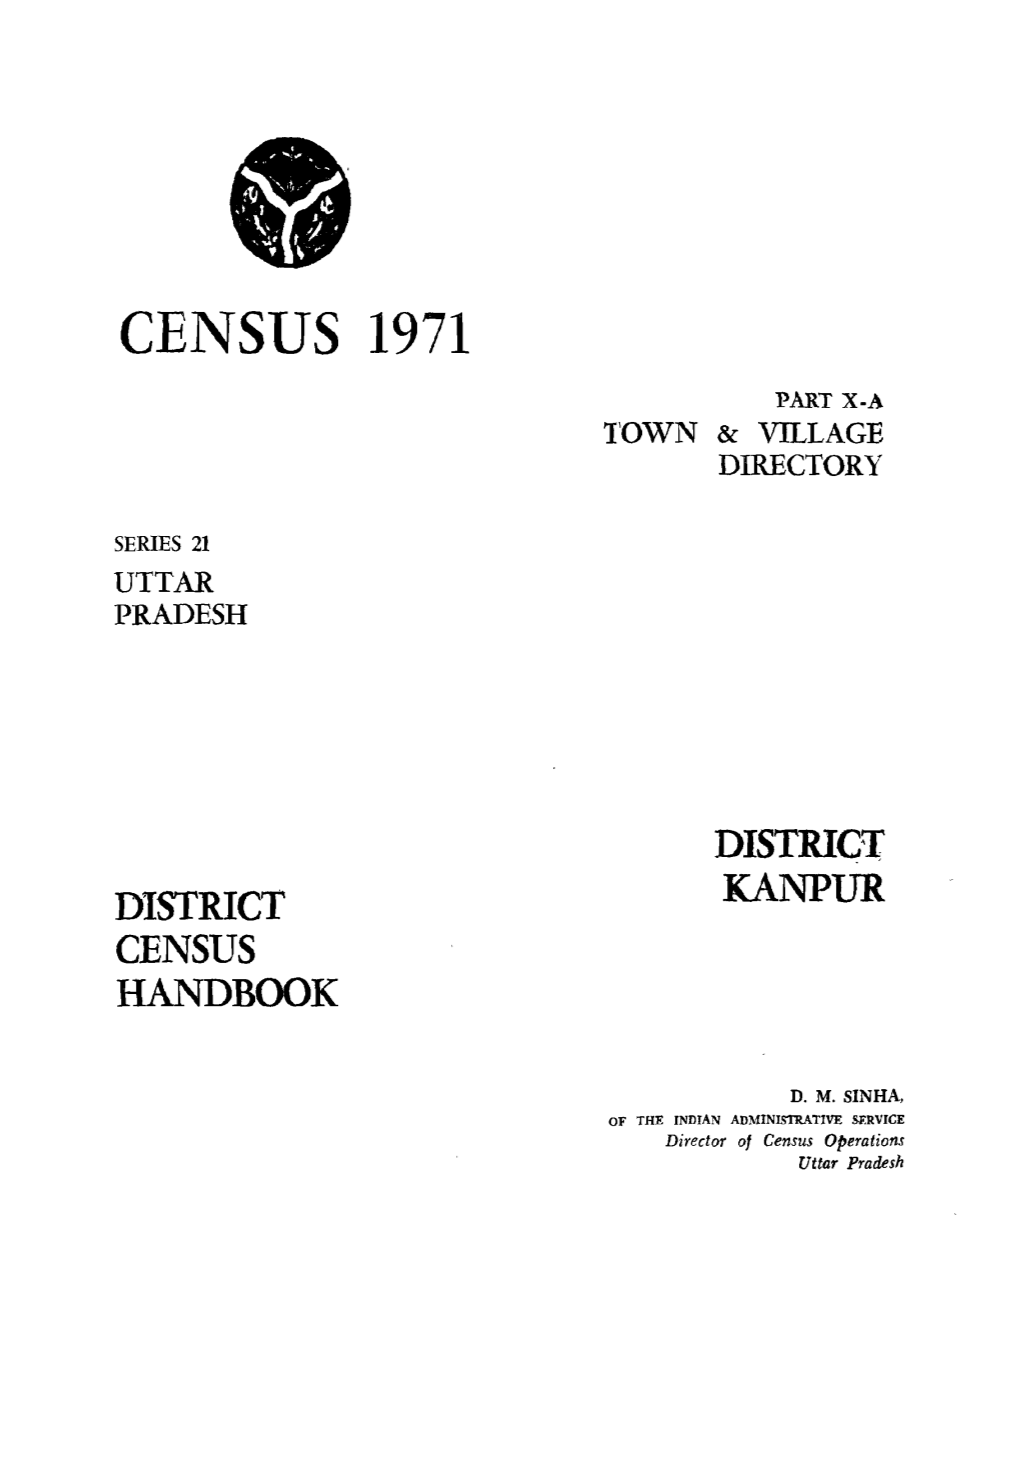 District Census Handbook, Kanpur, Part X-A, Series-21, Uttar Pradesh